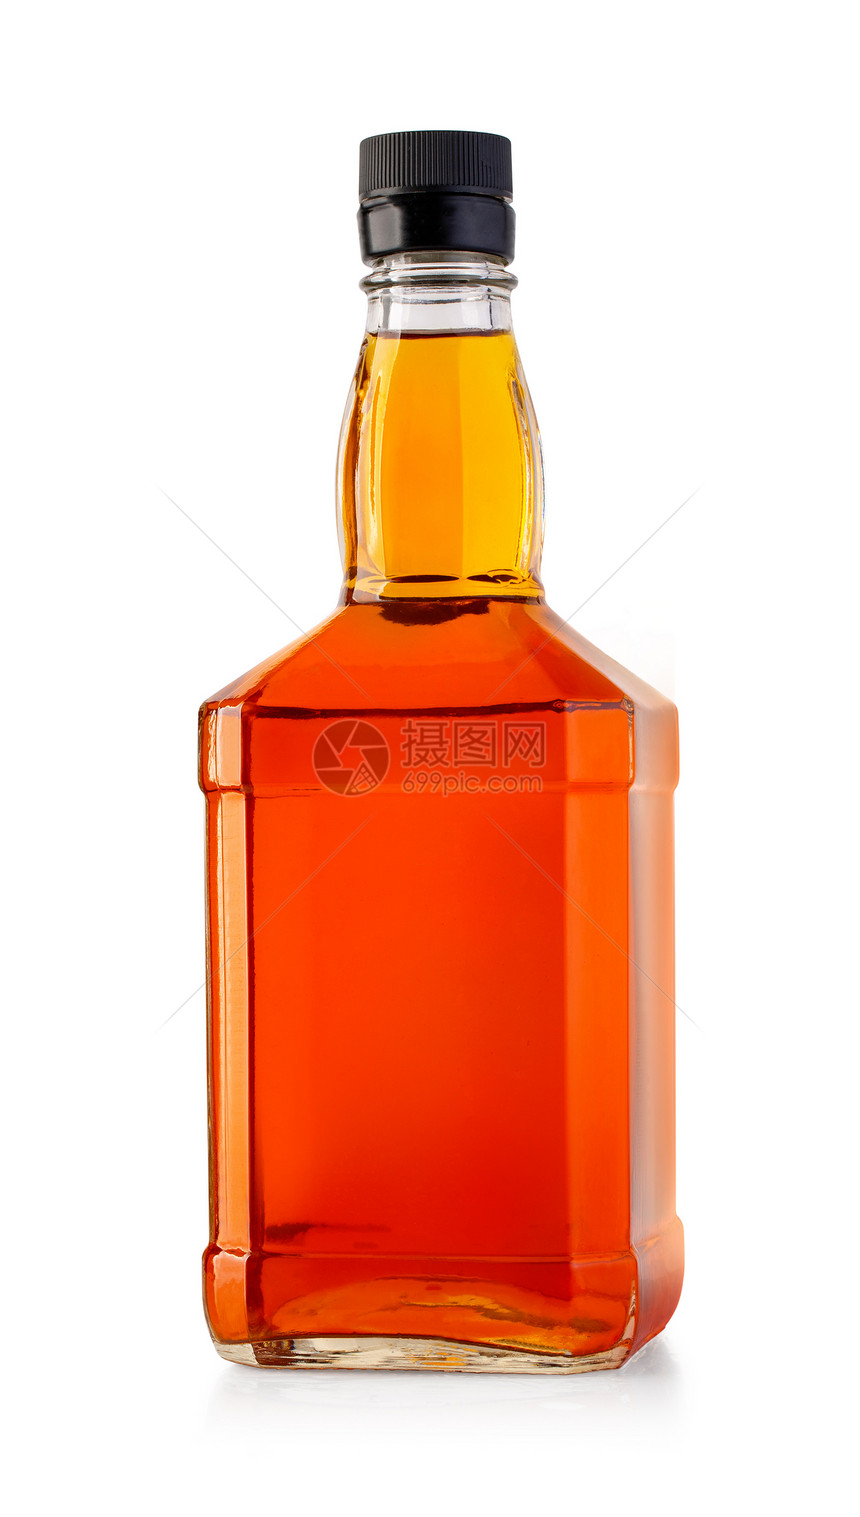 在白背景中孤立的威士忌瓶图片